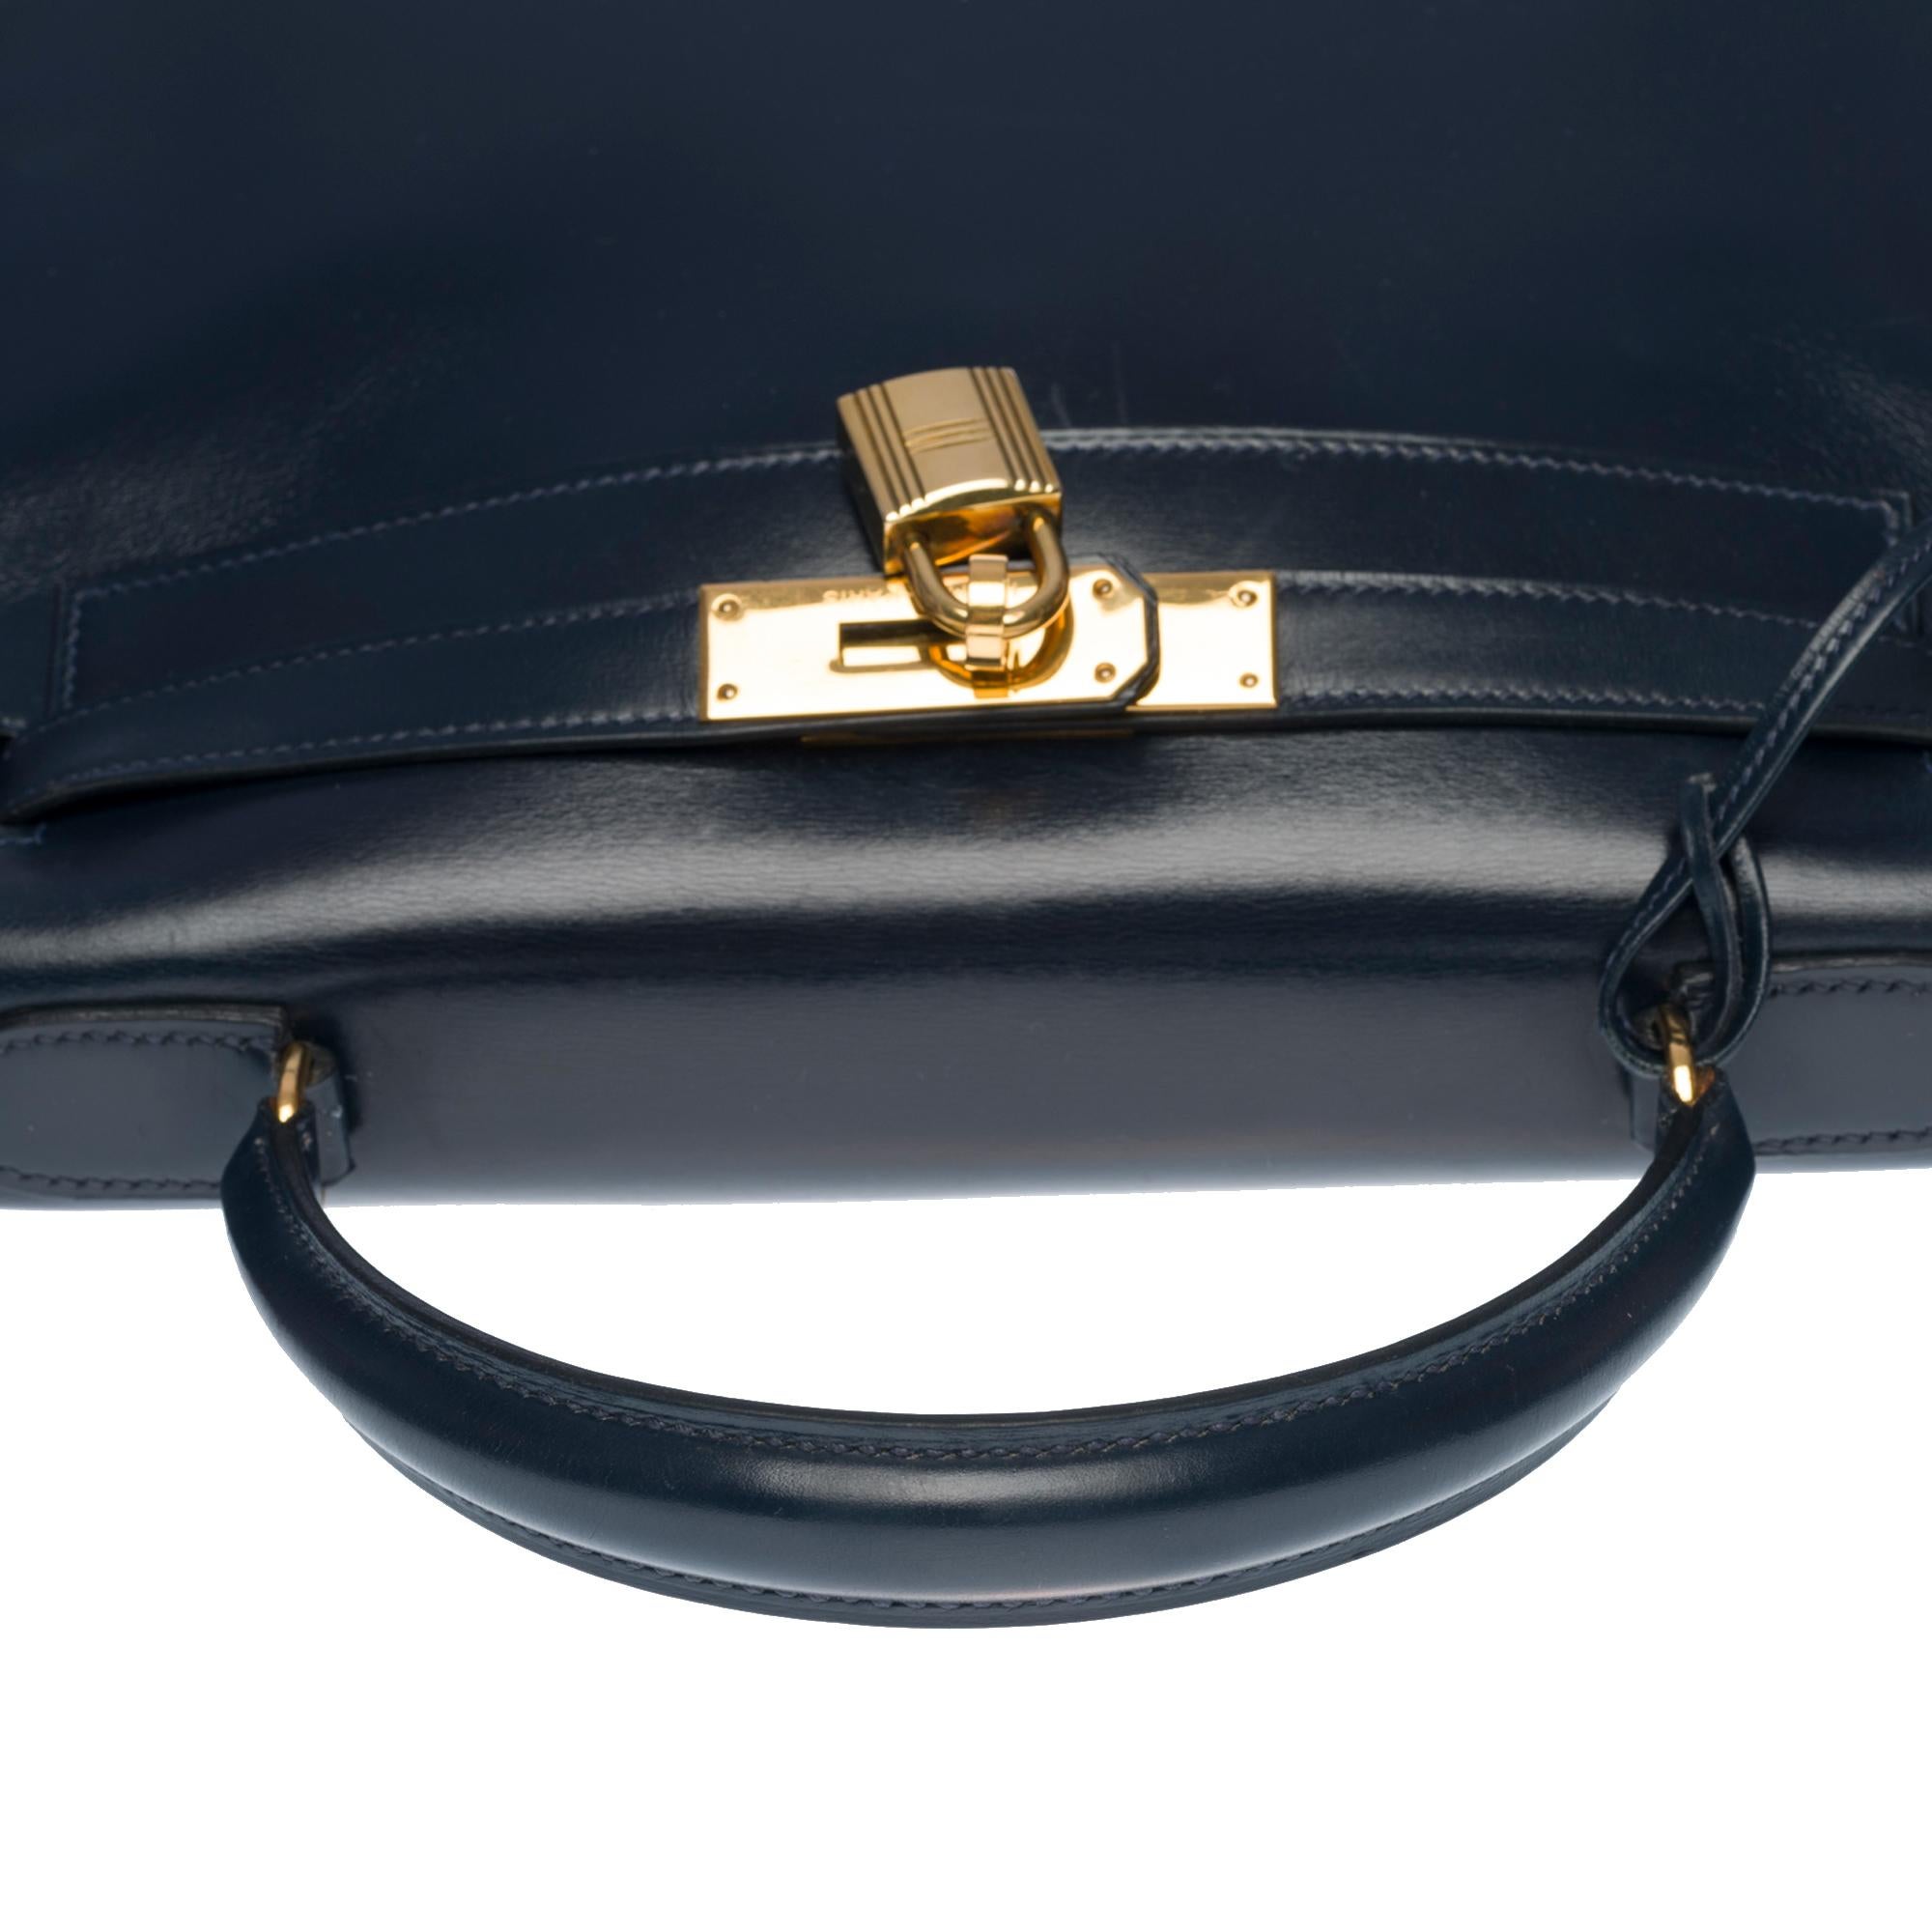 Rare Hermes Kelly 28 retourne handbag double strap in Navy blue box calfskin, GHW 1